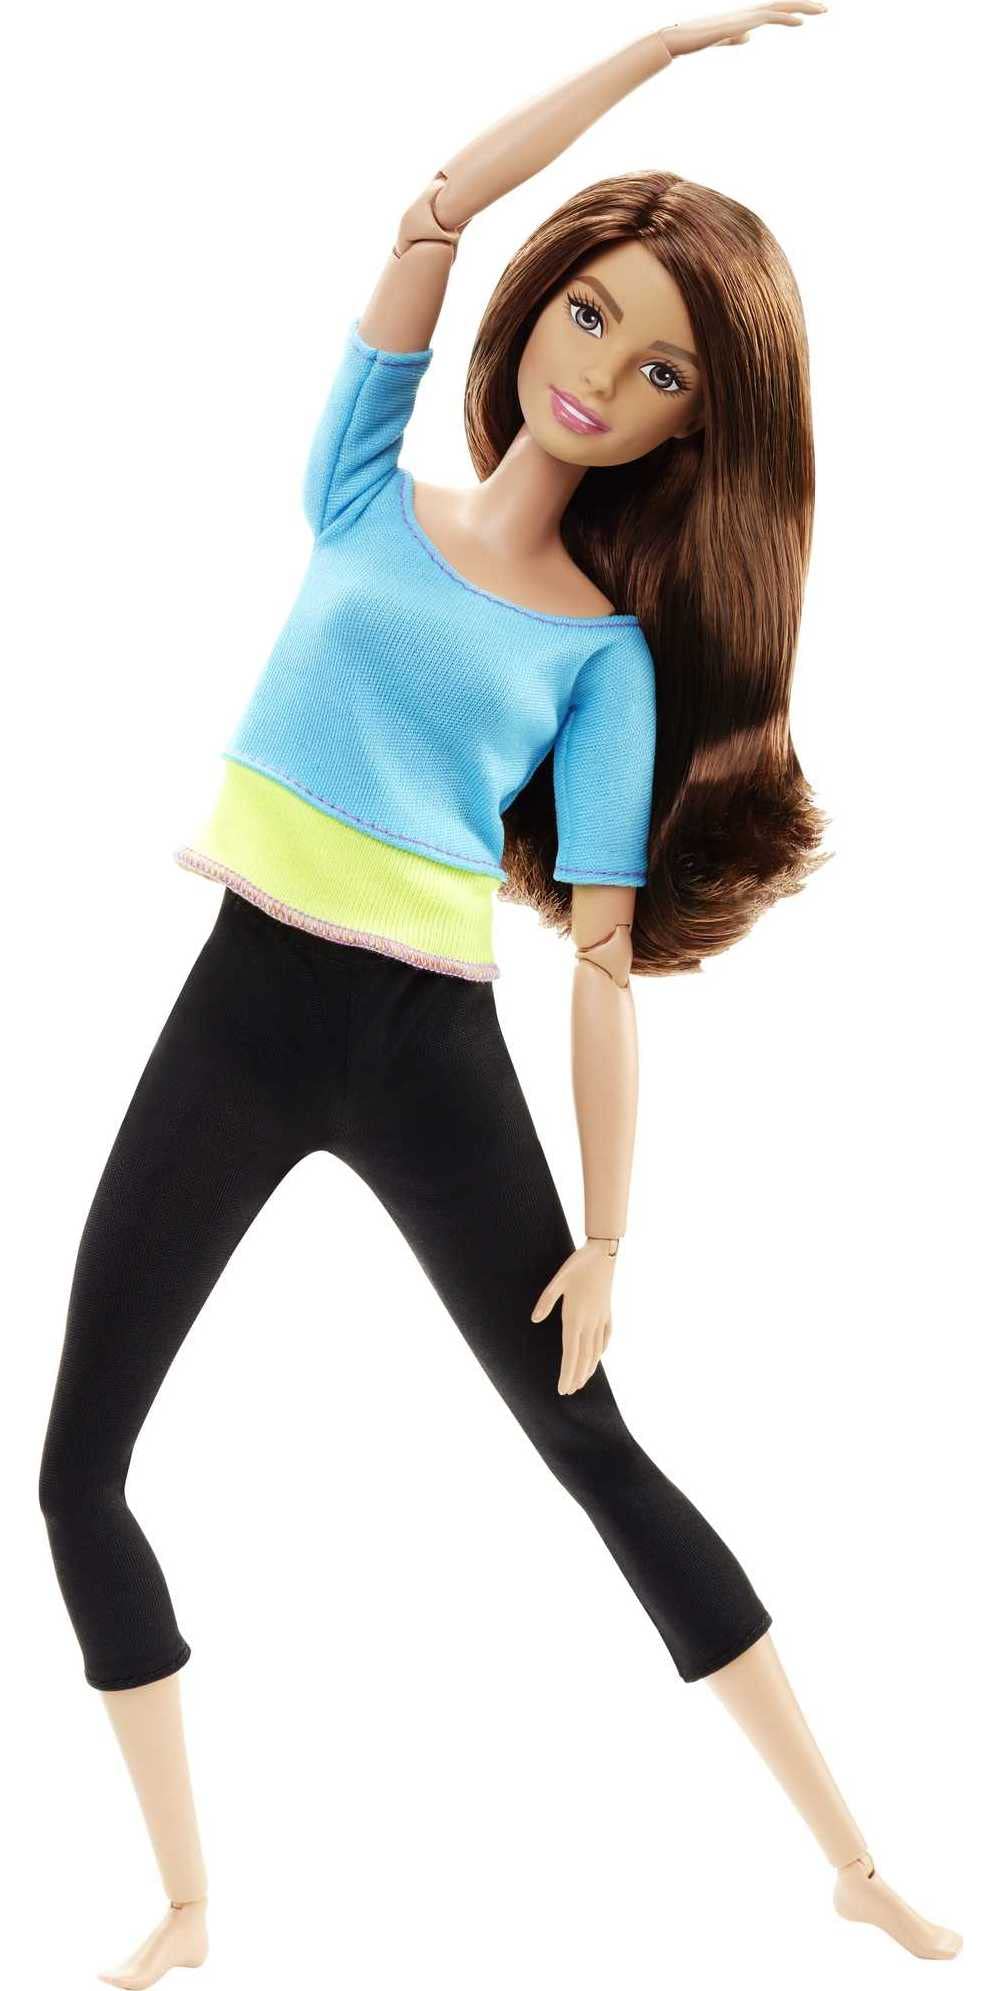 Magnifique Barbie Made to Move Poupee Articulee Fitness Ultra Flexible Brune avec Haut Bleu et 22 Points d´Articulations, Jouet pour Enfant, DJY08 Y4nm9EYgU meilleure vente